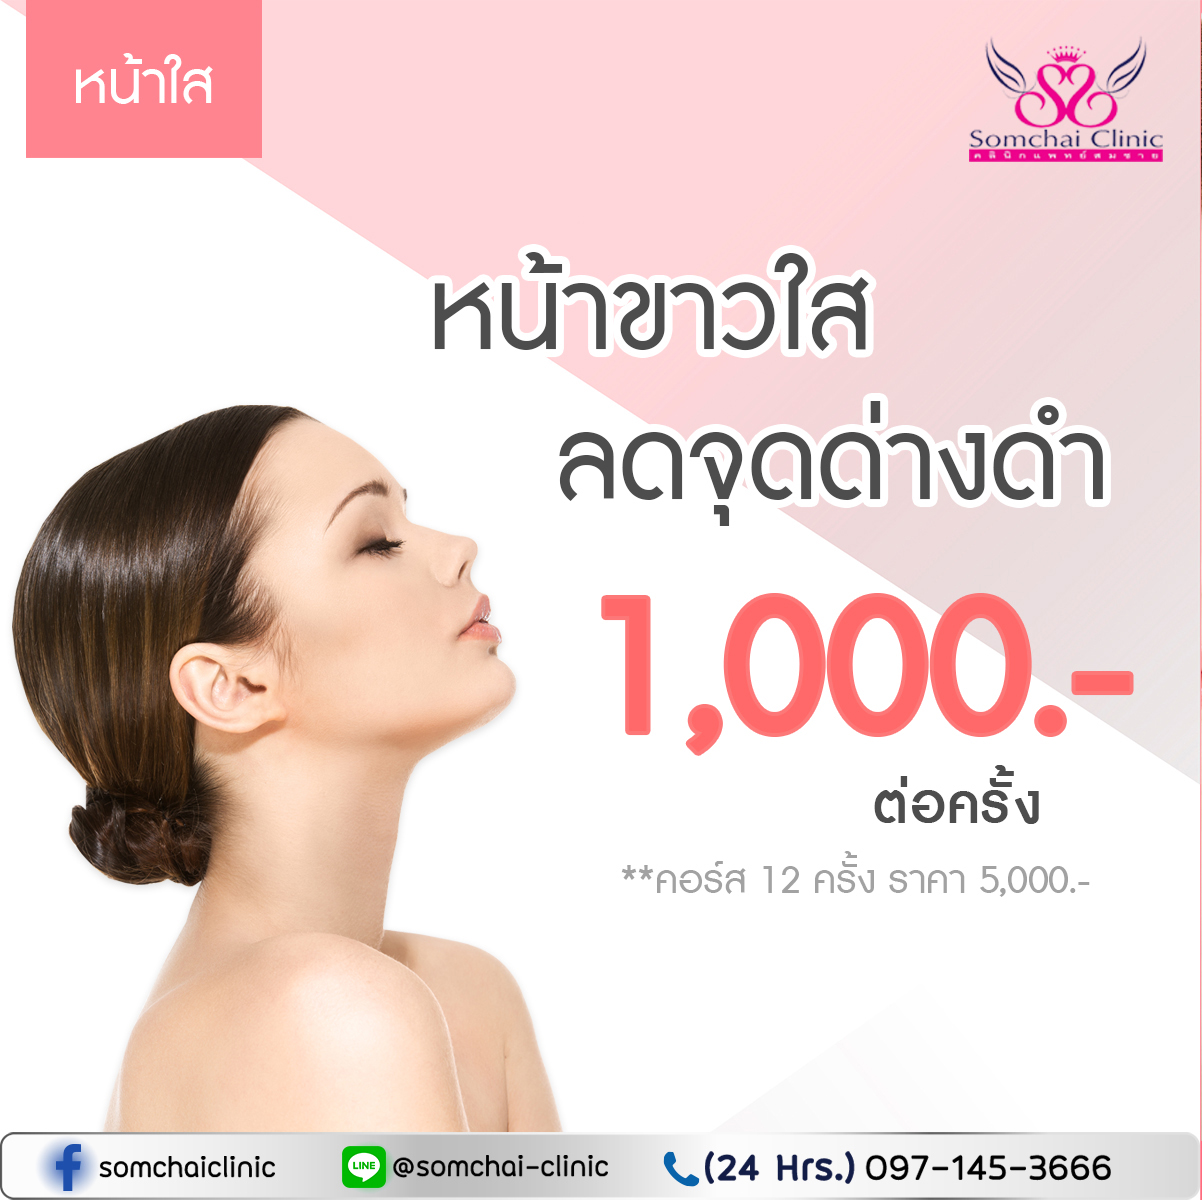 หน้าใส-SomchaiClinic-09122021